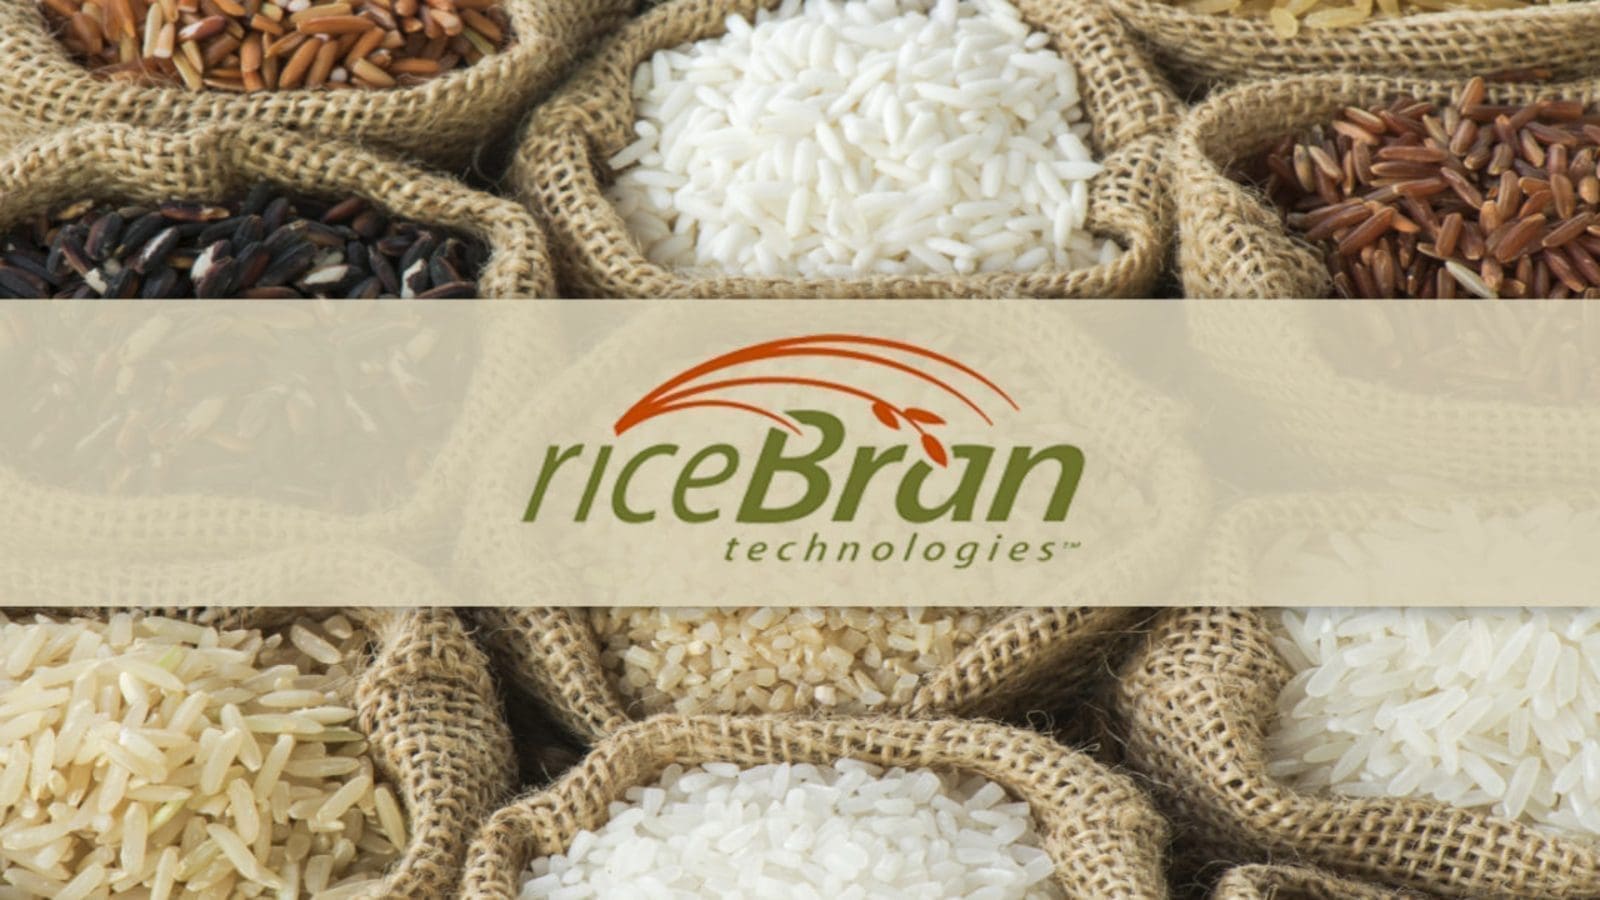 RiceBran expands Louisiana facility production capacity